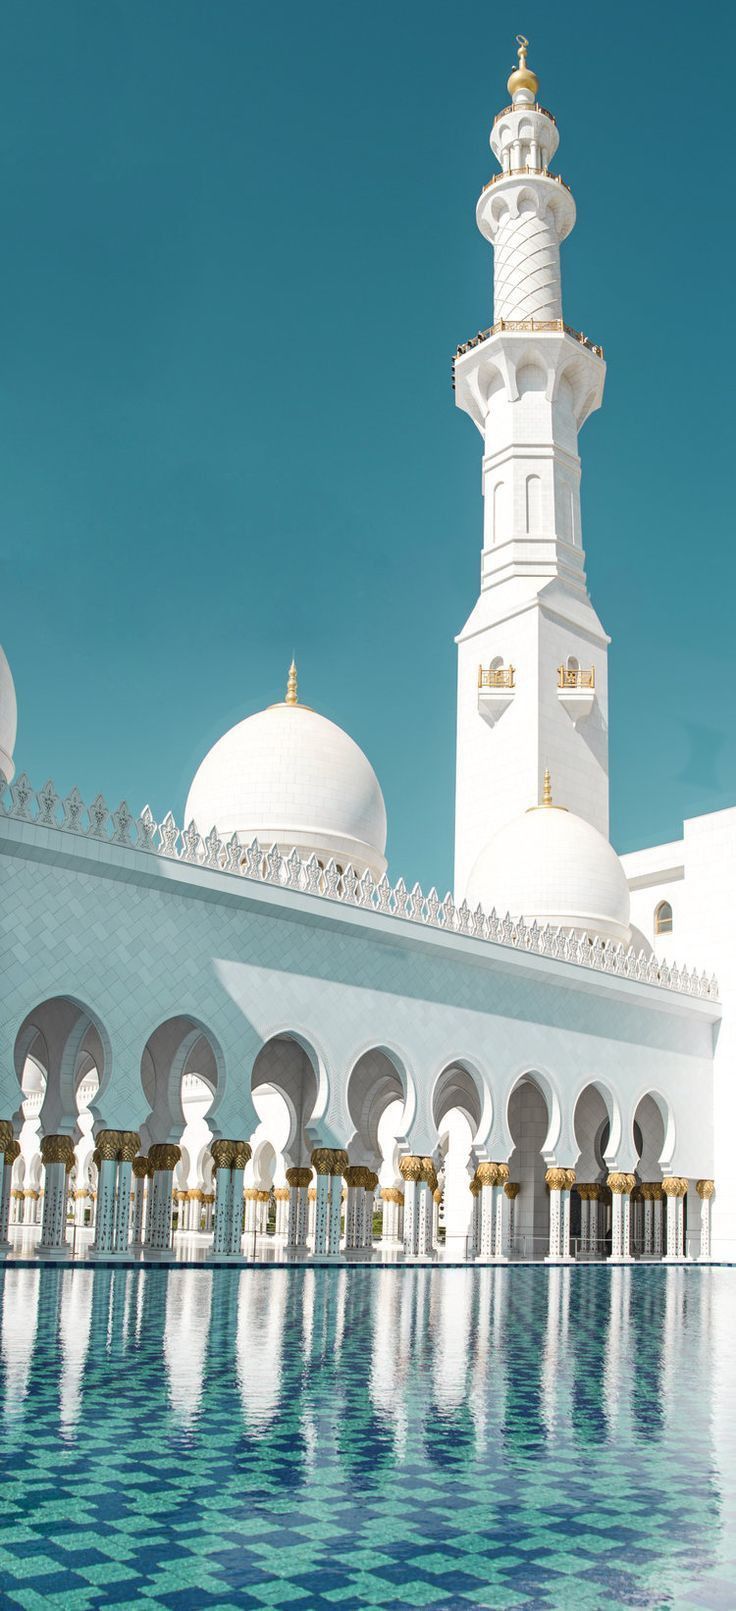 صور مساجد رمزيات وخلفيات مسجد بجودة HD 11